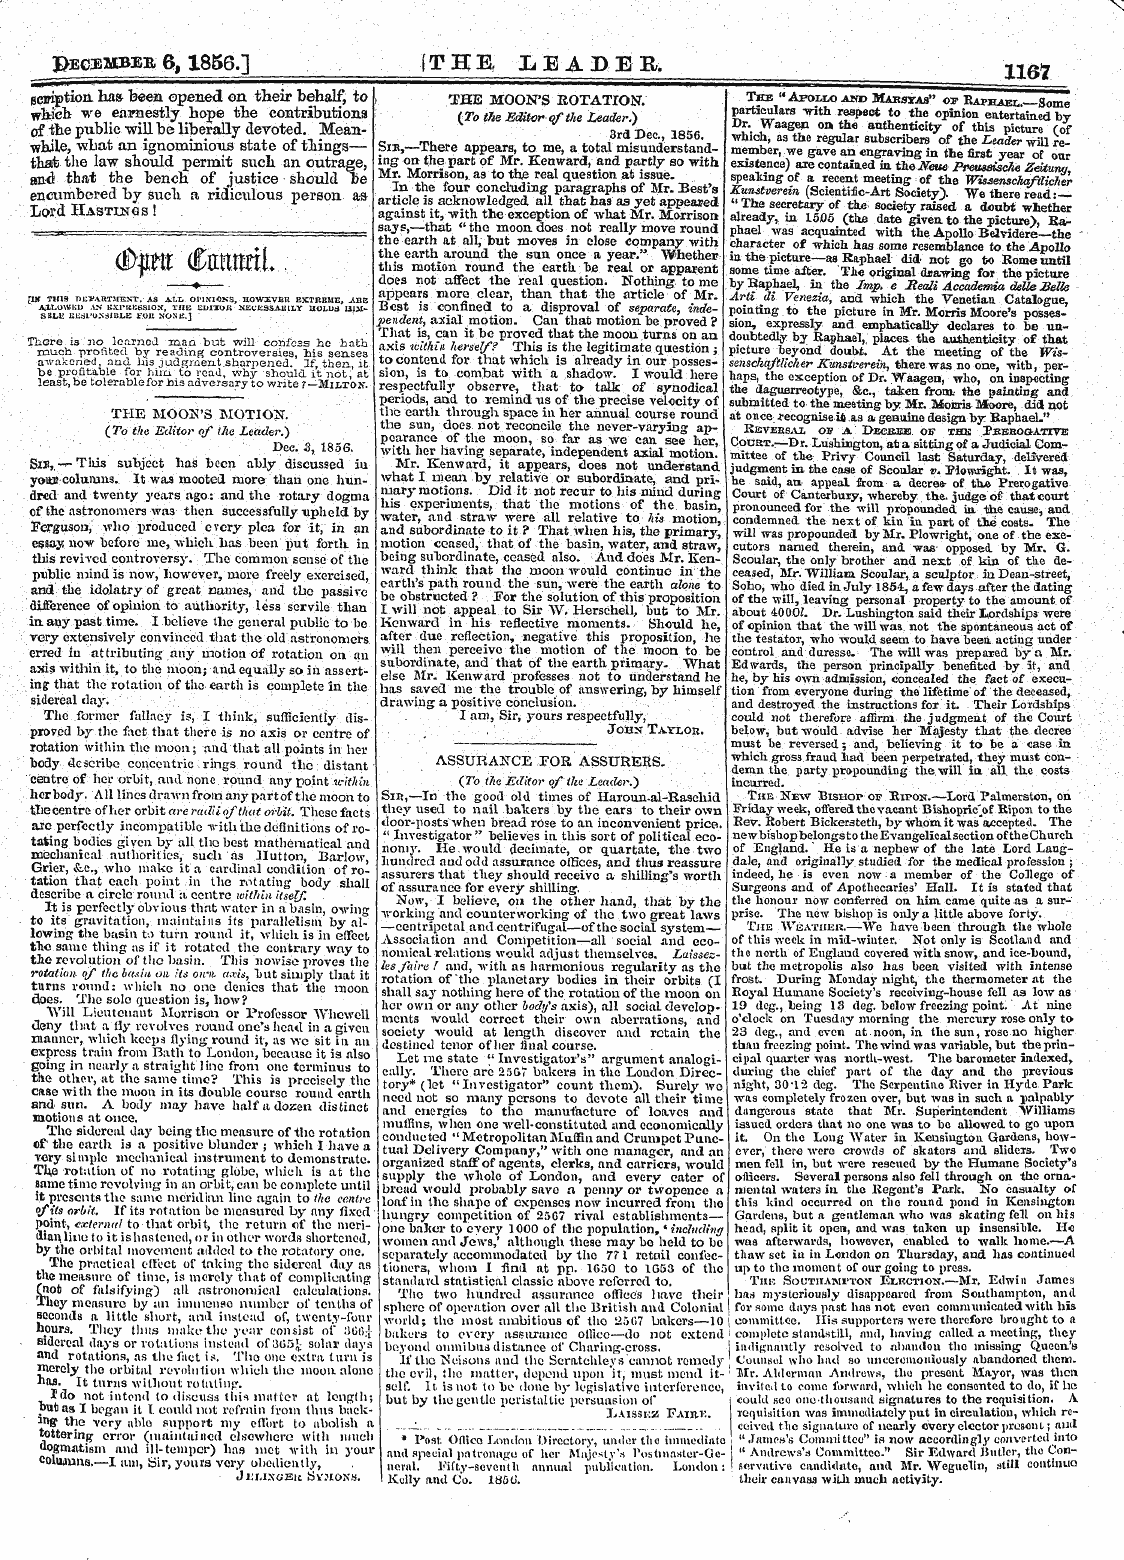 Leader (1850-1860): jS F Y, 2nd edition - " ¦ ¦ ' /Hvifimt /(Trrwttnl Veu-Ufu. Vjlyuuiulu „.